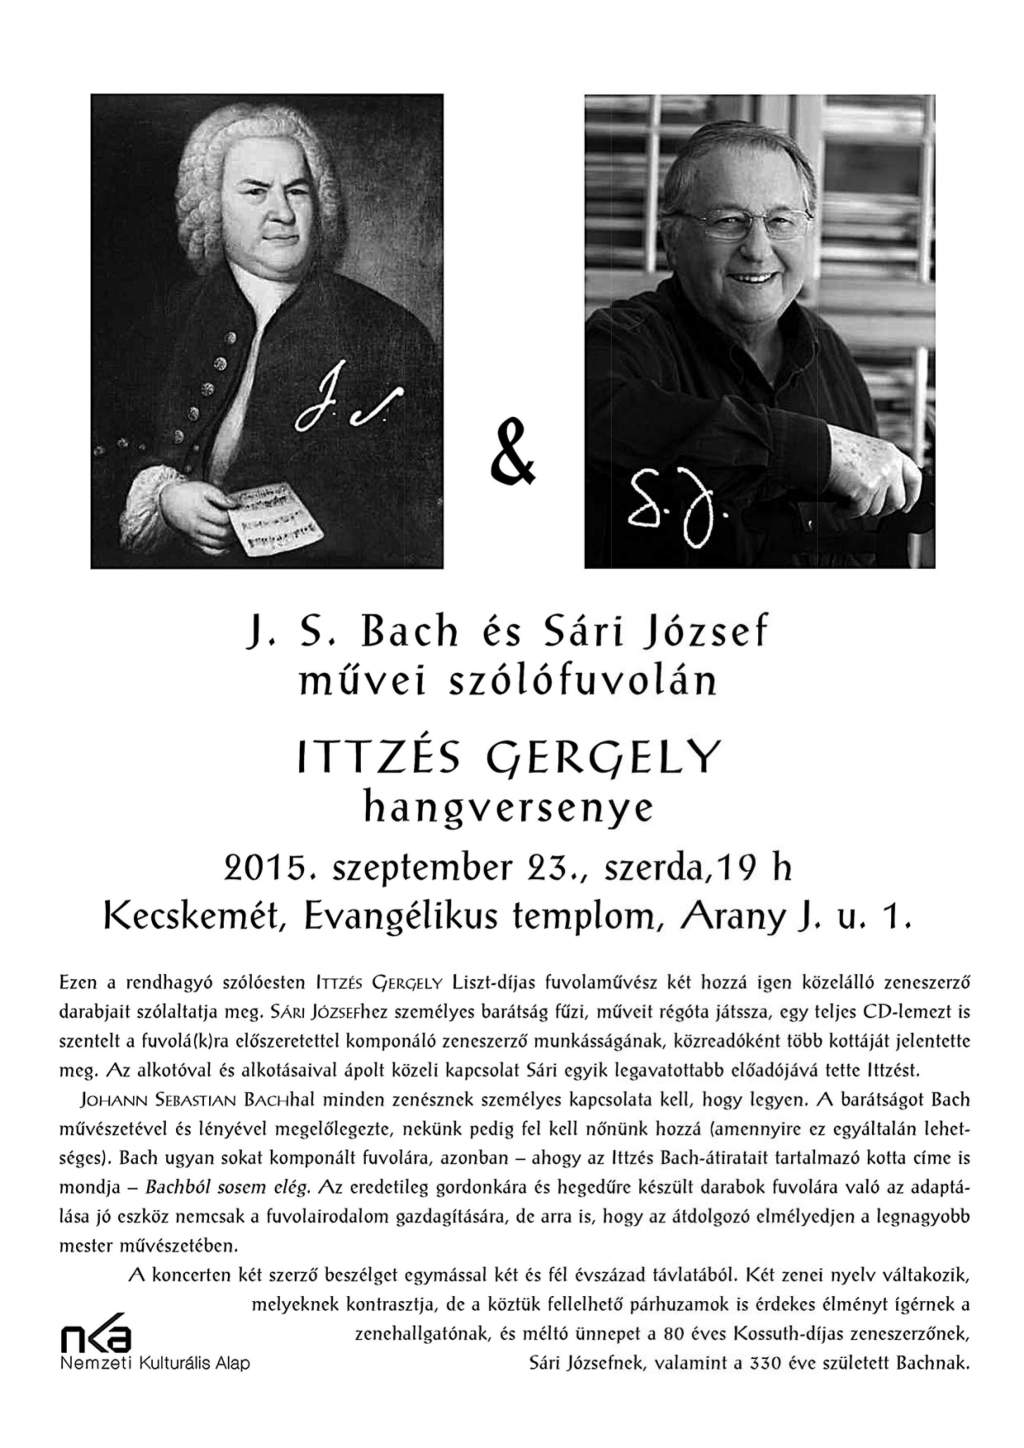 J. S. Bach és Sári József művei szólófuvolán